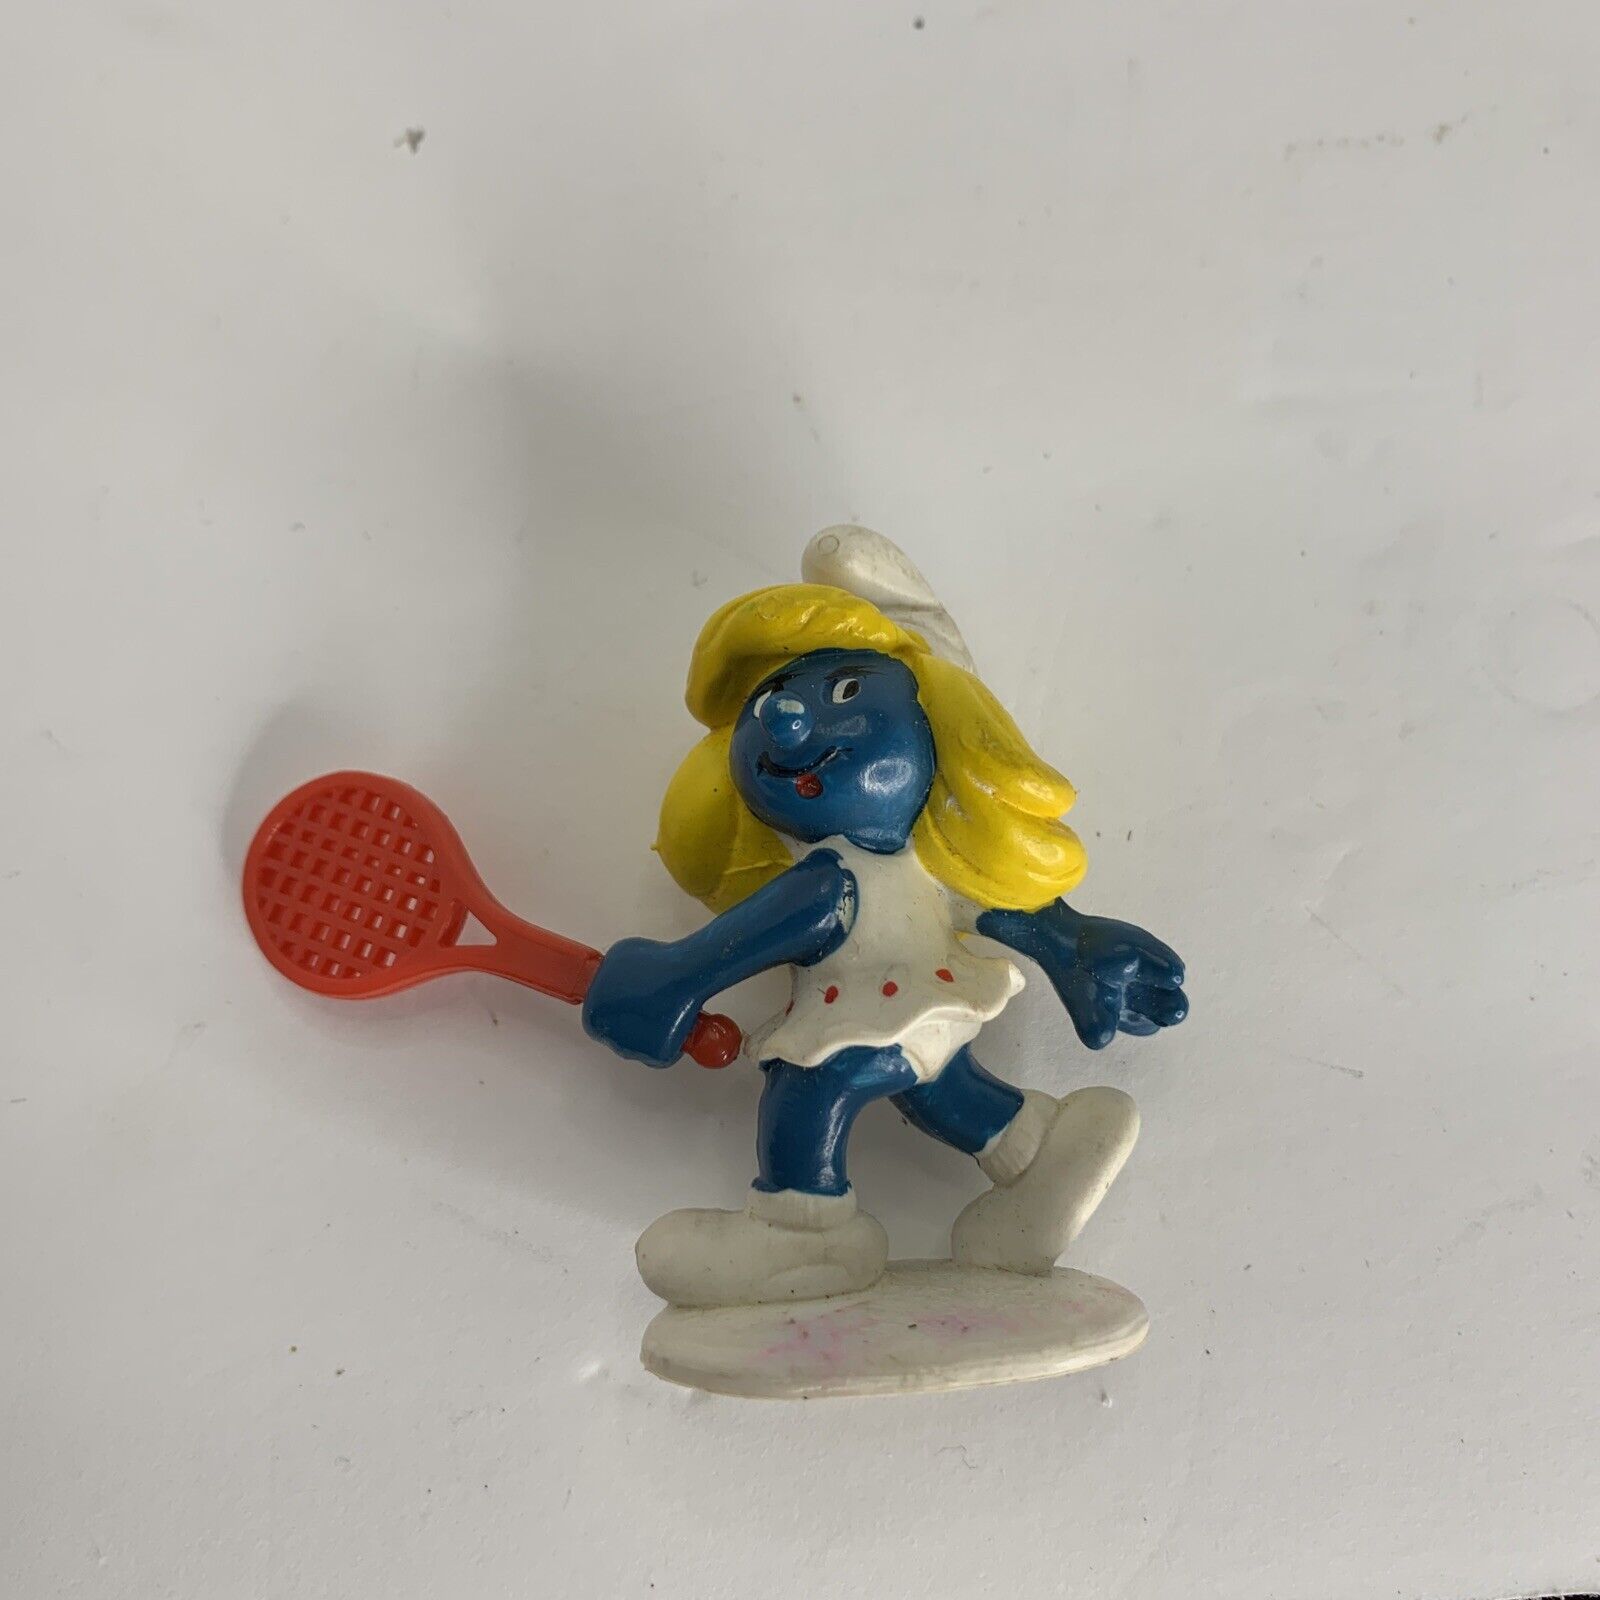 Smurfs 20135 Tennis Smurfette Vintage Smurf Figure 1981 PVC Figurine Schleich